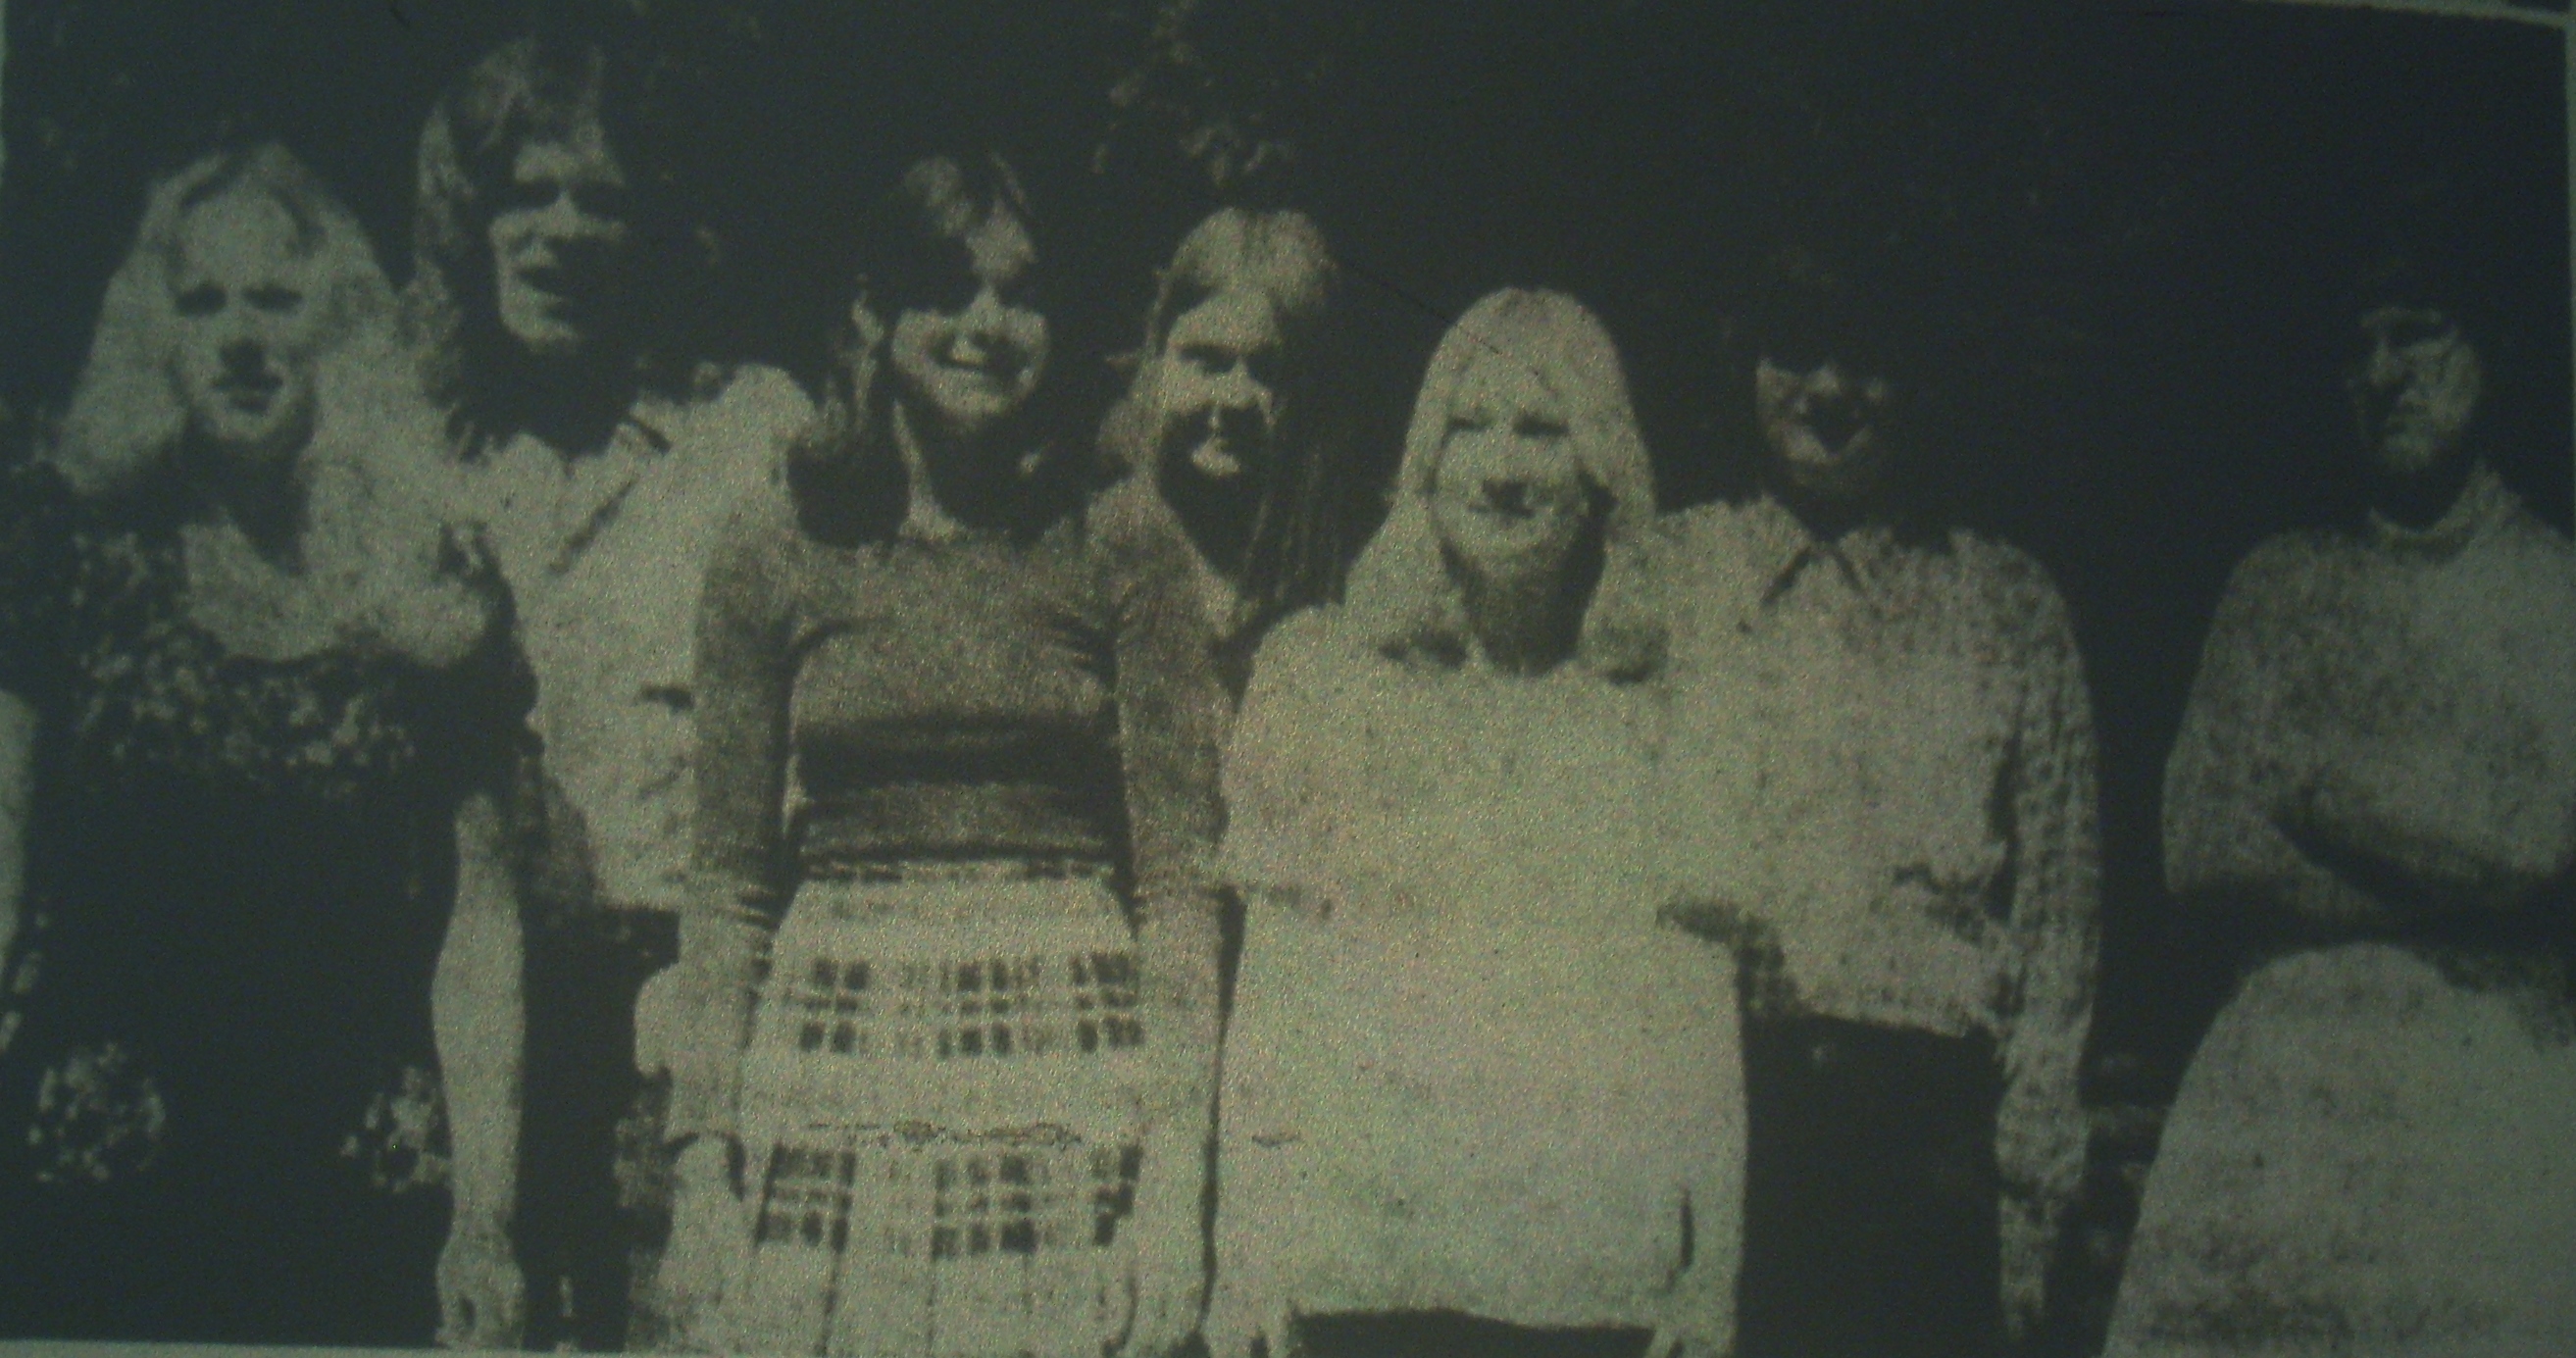 Jyderup Realskoles afgangselver 1973